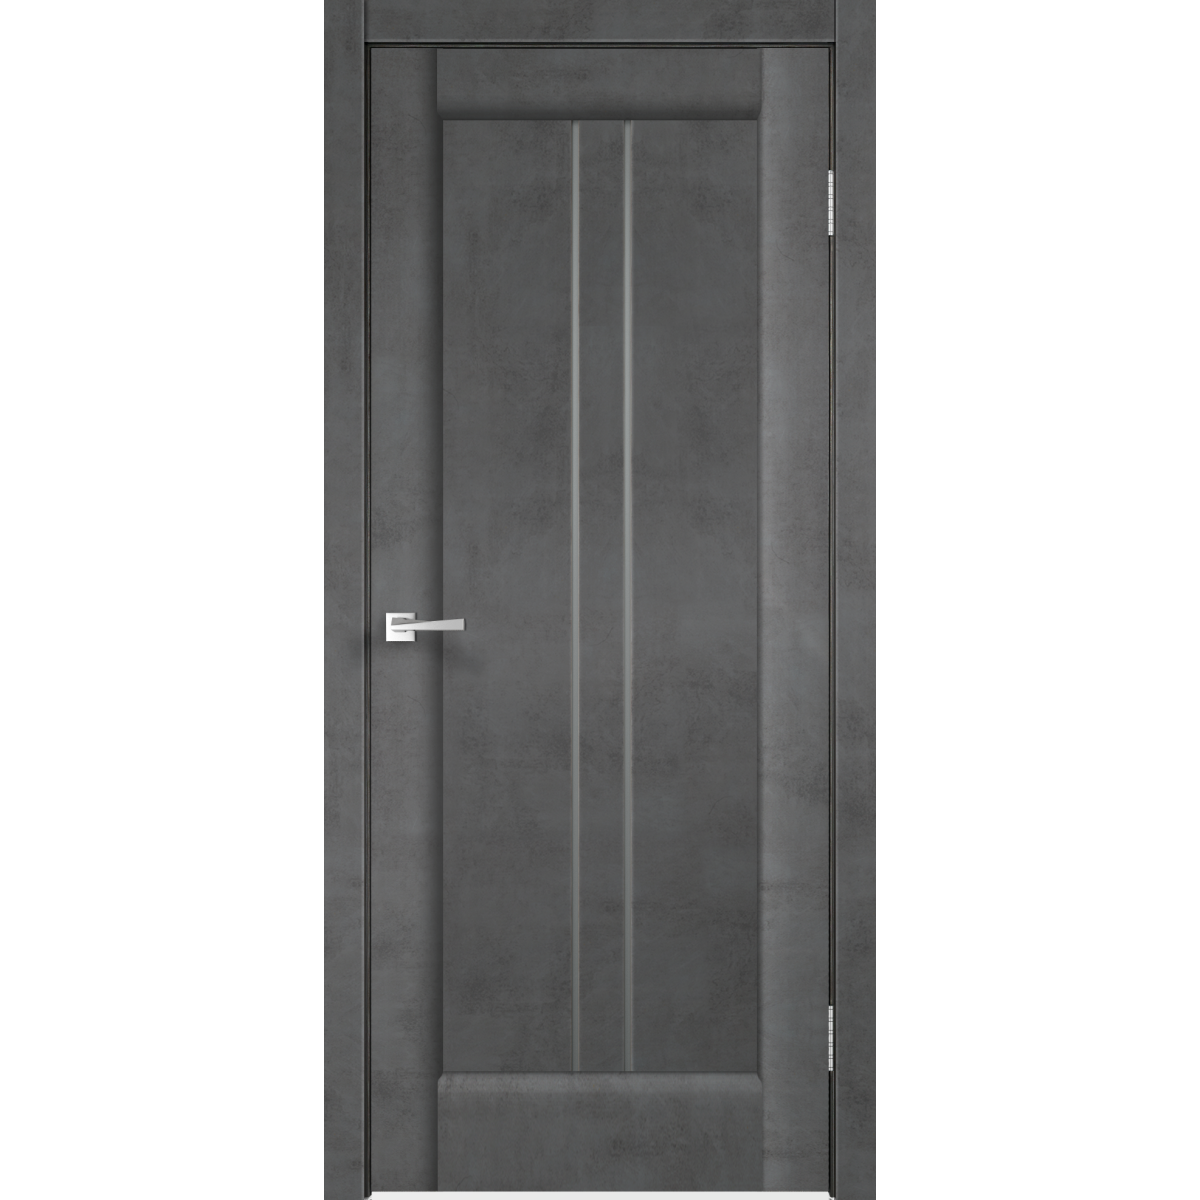 Дверь межкомнатная остеклённая «Сиэтл», 90x200 см, ПВХ, цвет лофт тёмный, с фурнитурой